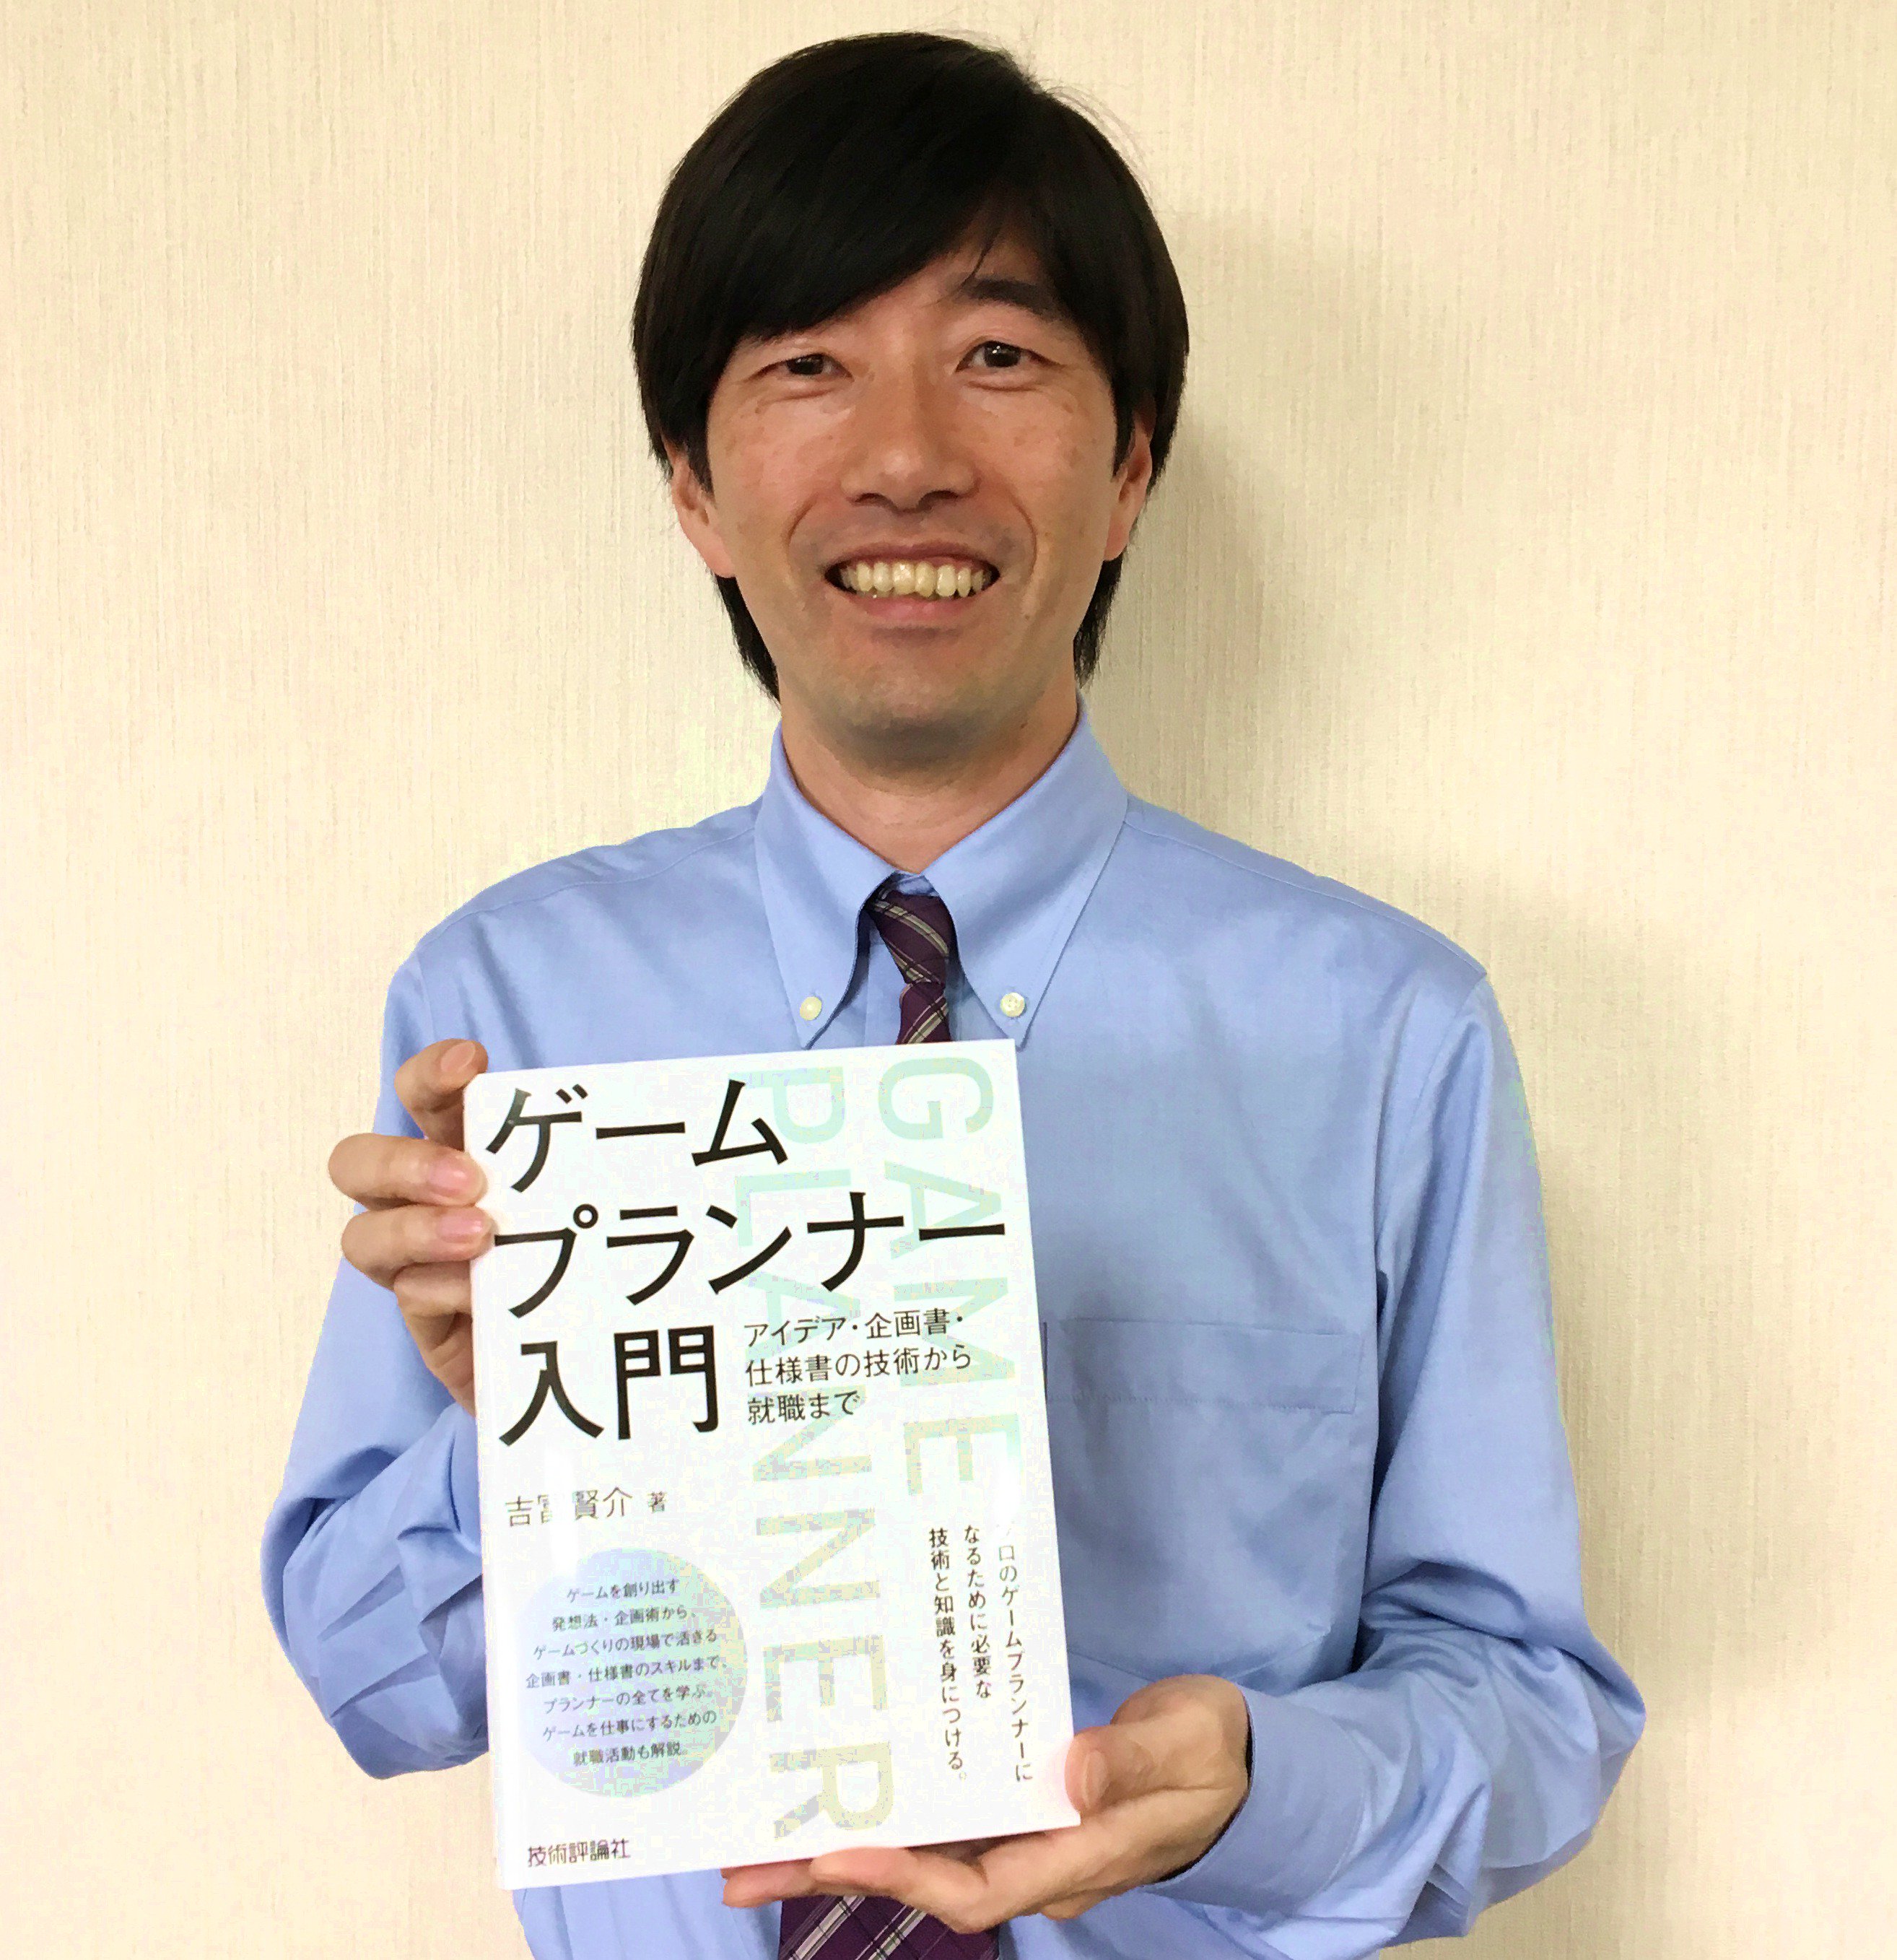 日本工学院八王子ゲームクリエイター科 本校のゲームクリエイター科の主任 吉冨賢介先生のプランナー 向けの本が発売しています 将来プランナーを目指す方は買って損しない一冊です ゲームプランナー入門 アイデア 企画書 仕様書の技術から就職